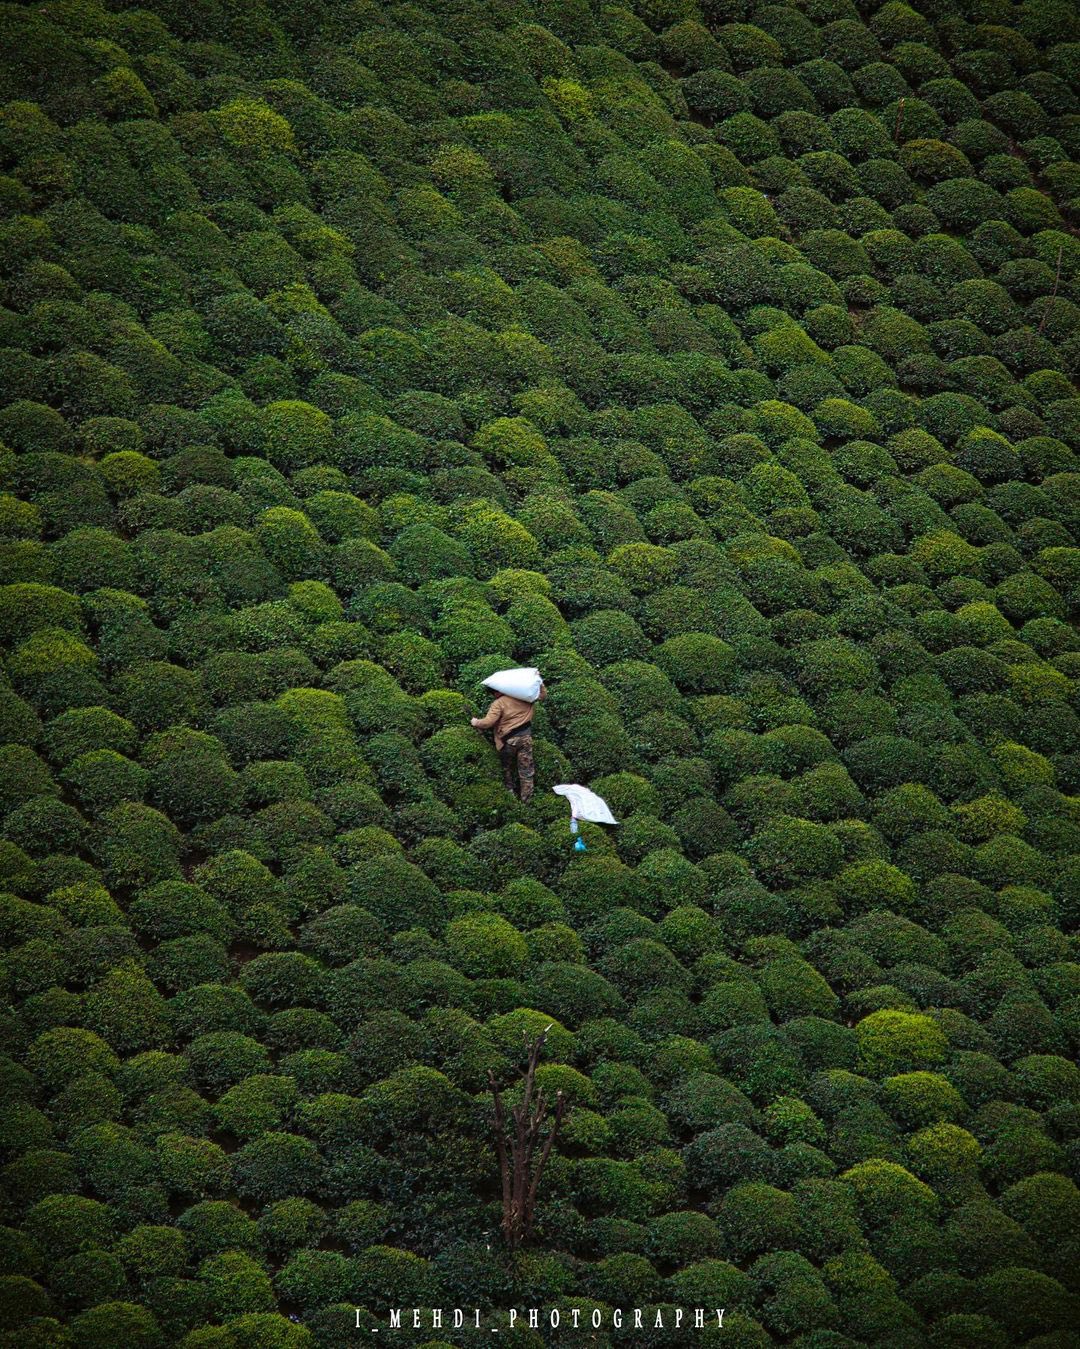 نمای هوایی از برداشت چای در گیلان + عکس